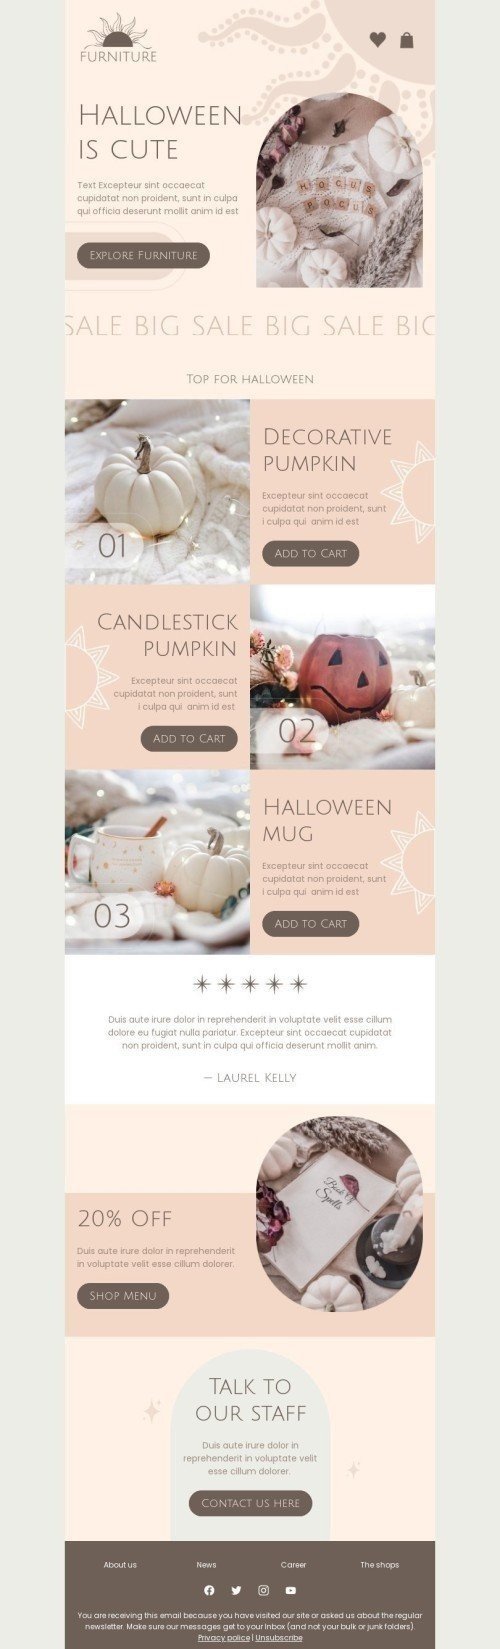 Plantilla de correo electrónico «Halloween es lindo» de Halloween para la industria de Muebles, interior y bricolaje Vista de móvil